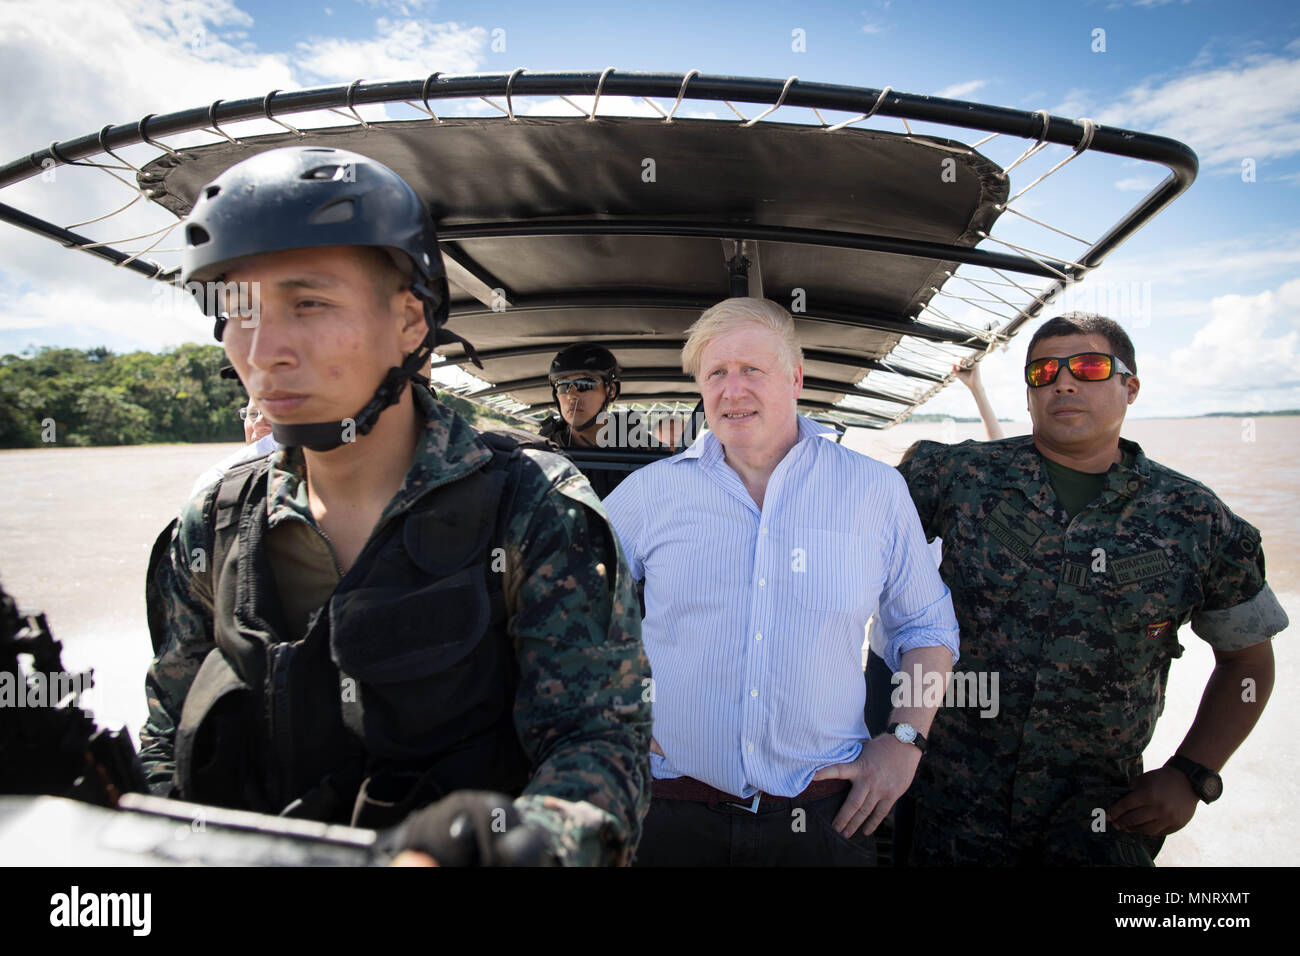 Segretario di Stato per gli affari esteri Boris Johnson corse su una pattuglia marina barca sul fiume Rio delle Amazzoni vicino a Iquitos in Perù con i membri della peruviana forze armate che stanno cercando di impedire che il traffico illegale di commercio di specie selvatiche. Foto Stock